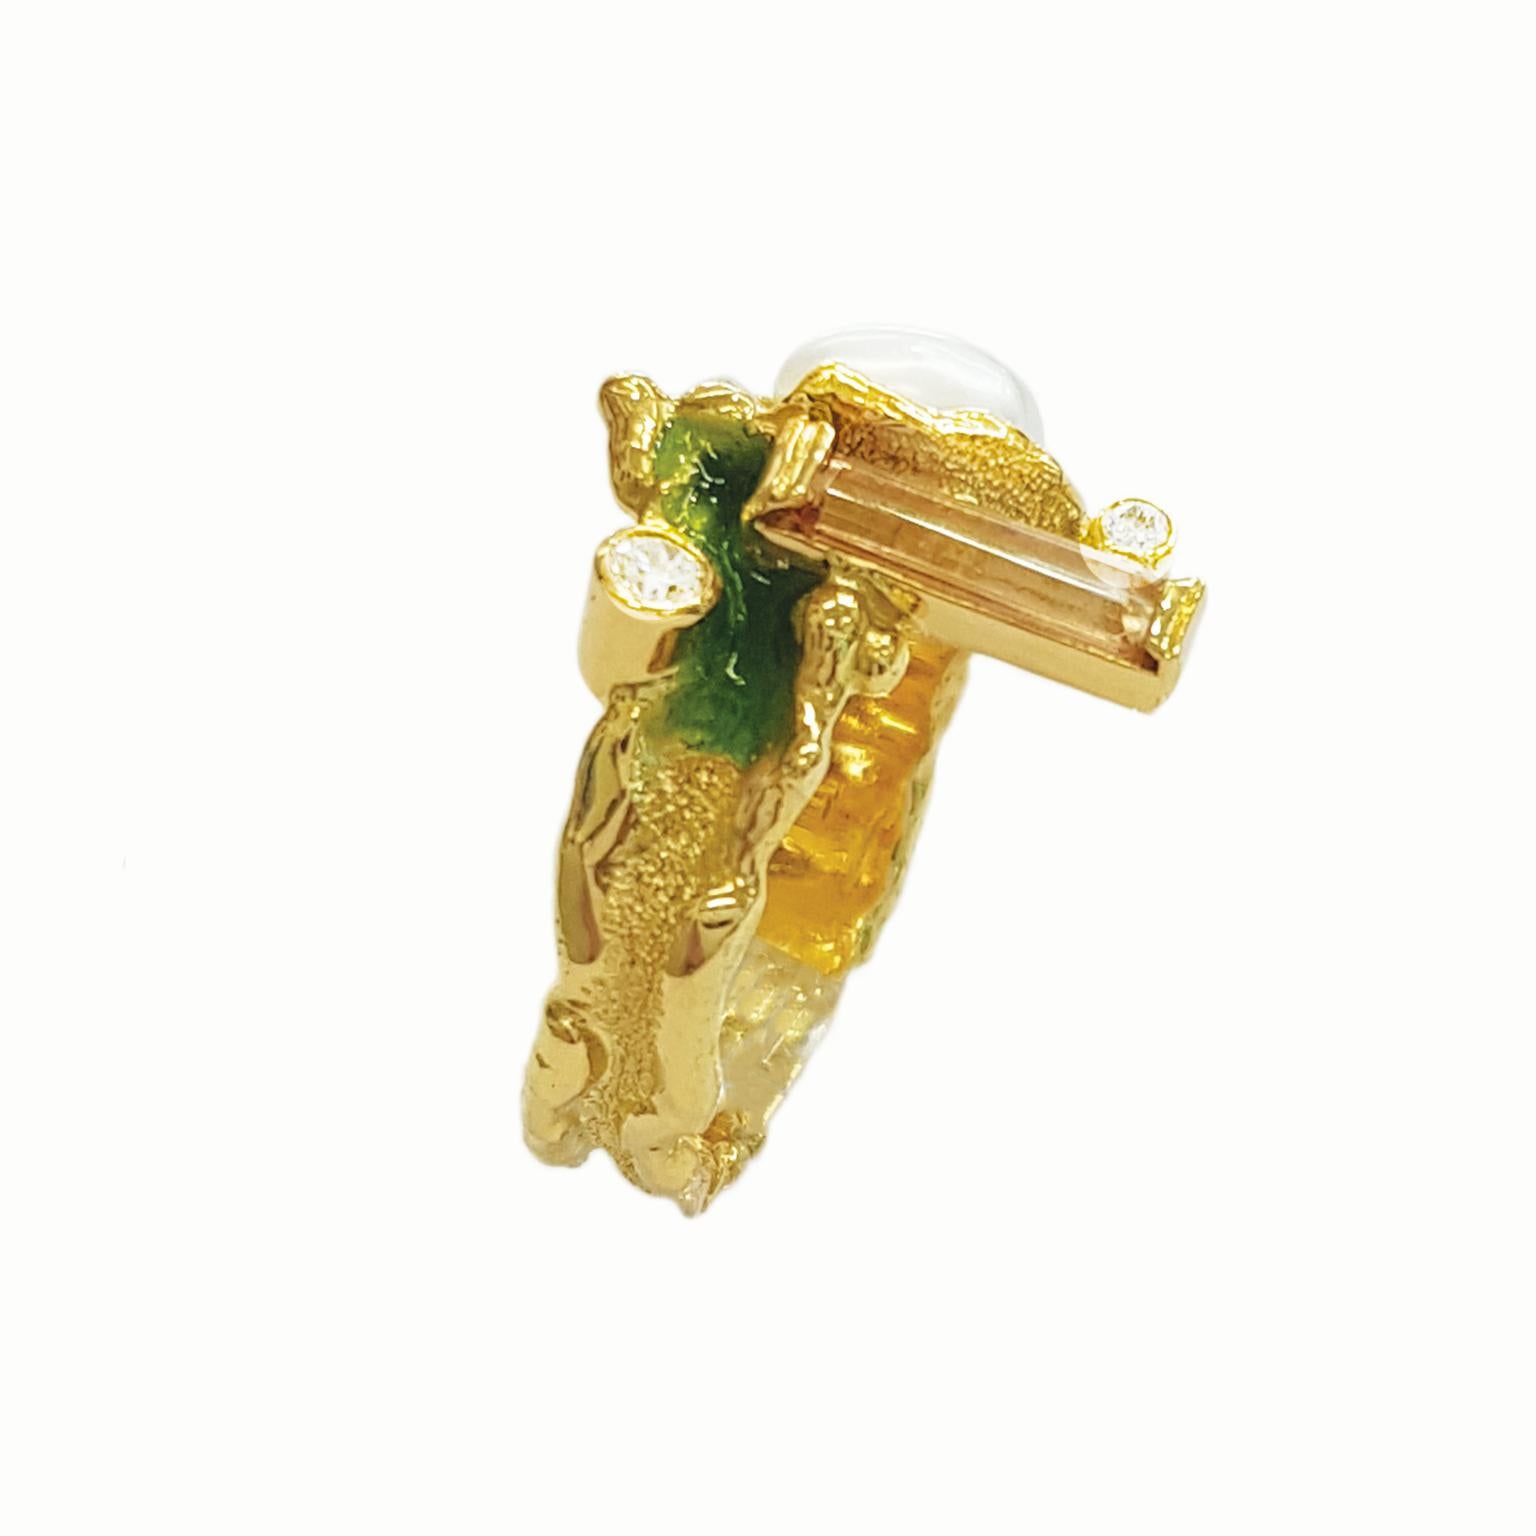 Gönnen Sie sich den opulenten Charme des Rings Molten Edge Natural Baguette Imperial Topaz, Diamant und Perle von Paul Amey - ein wahres Zeugnis von Luxus und Handwerkskunst, sorgfältig gefertigt aus 18 Karat Gelbgold.

Dieser bezaubernde Ring